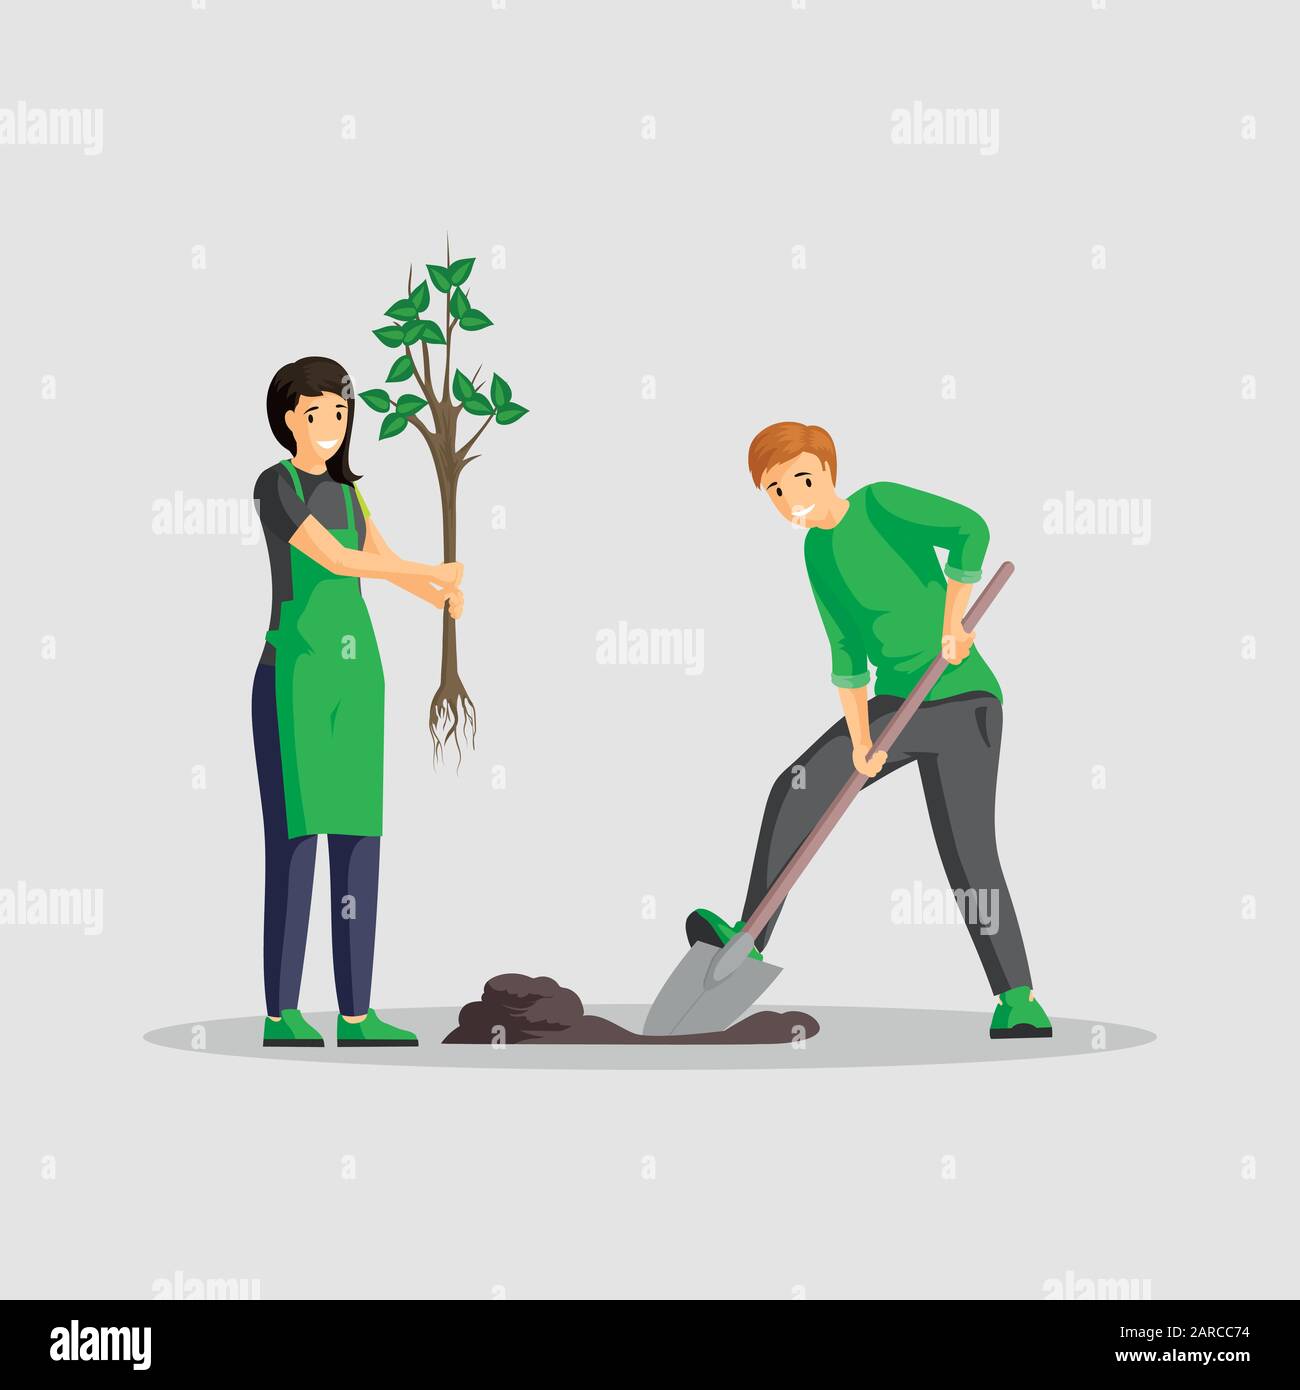 Paare Pflanzen Baum flach Vektor Illustration. Menschen, die isolierte Cartoon-Charaktere im Garten arbeiten, Freiwillige arbeiten im Freien zusammen, grüner Planet. Mann graben und Frau beim Sägen Stock Vektor